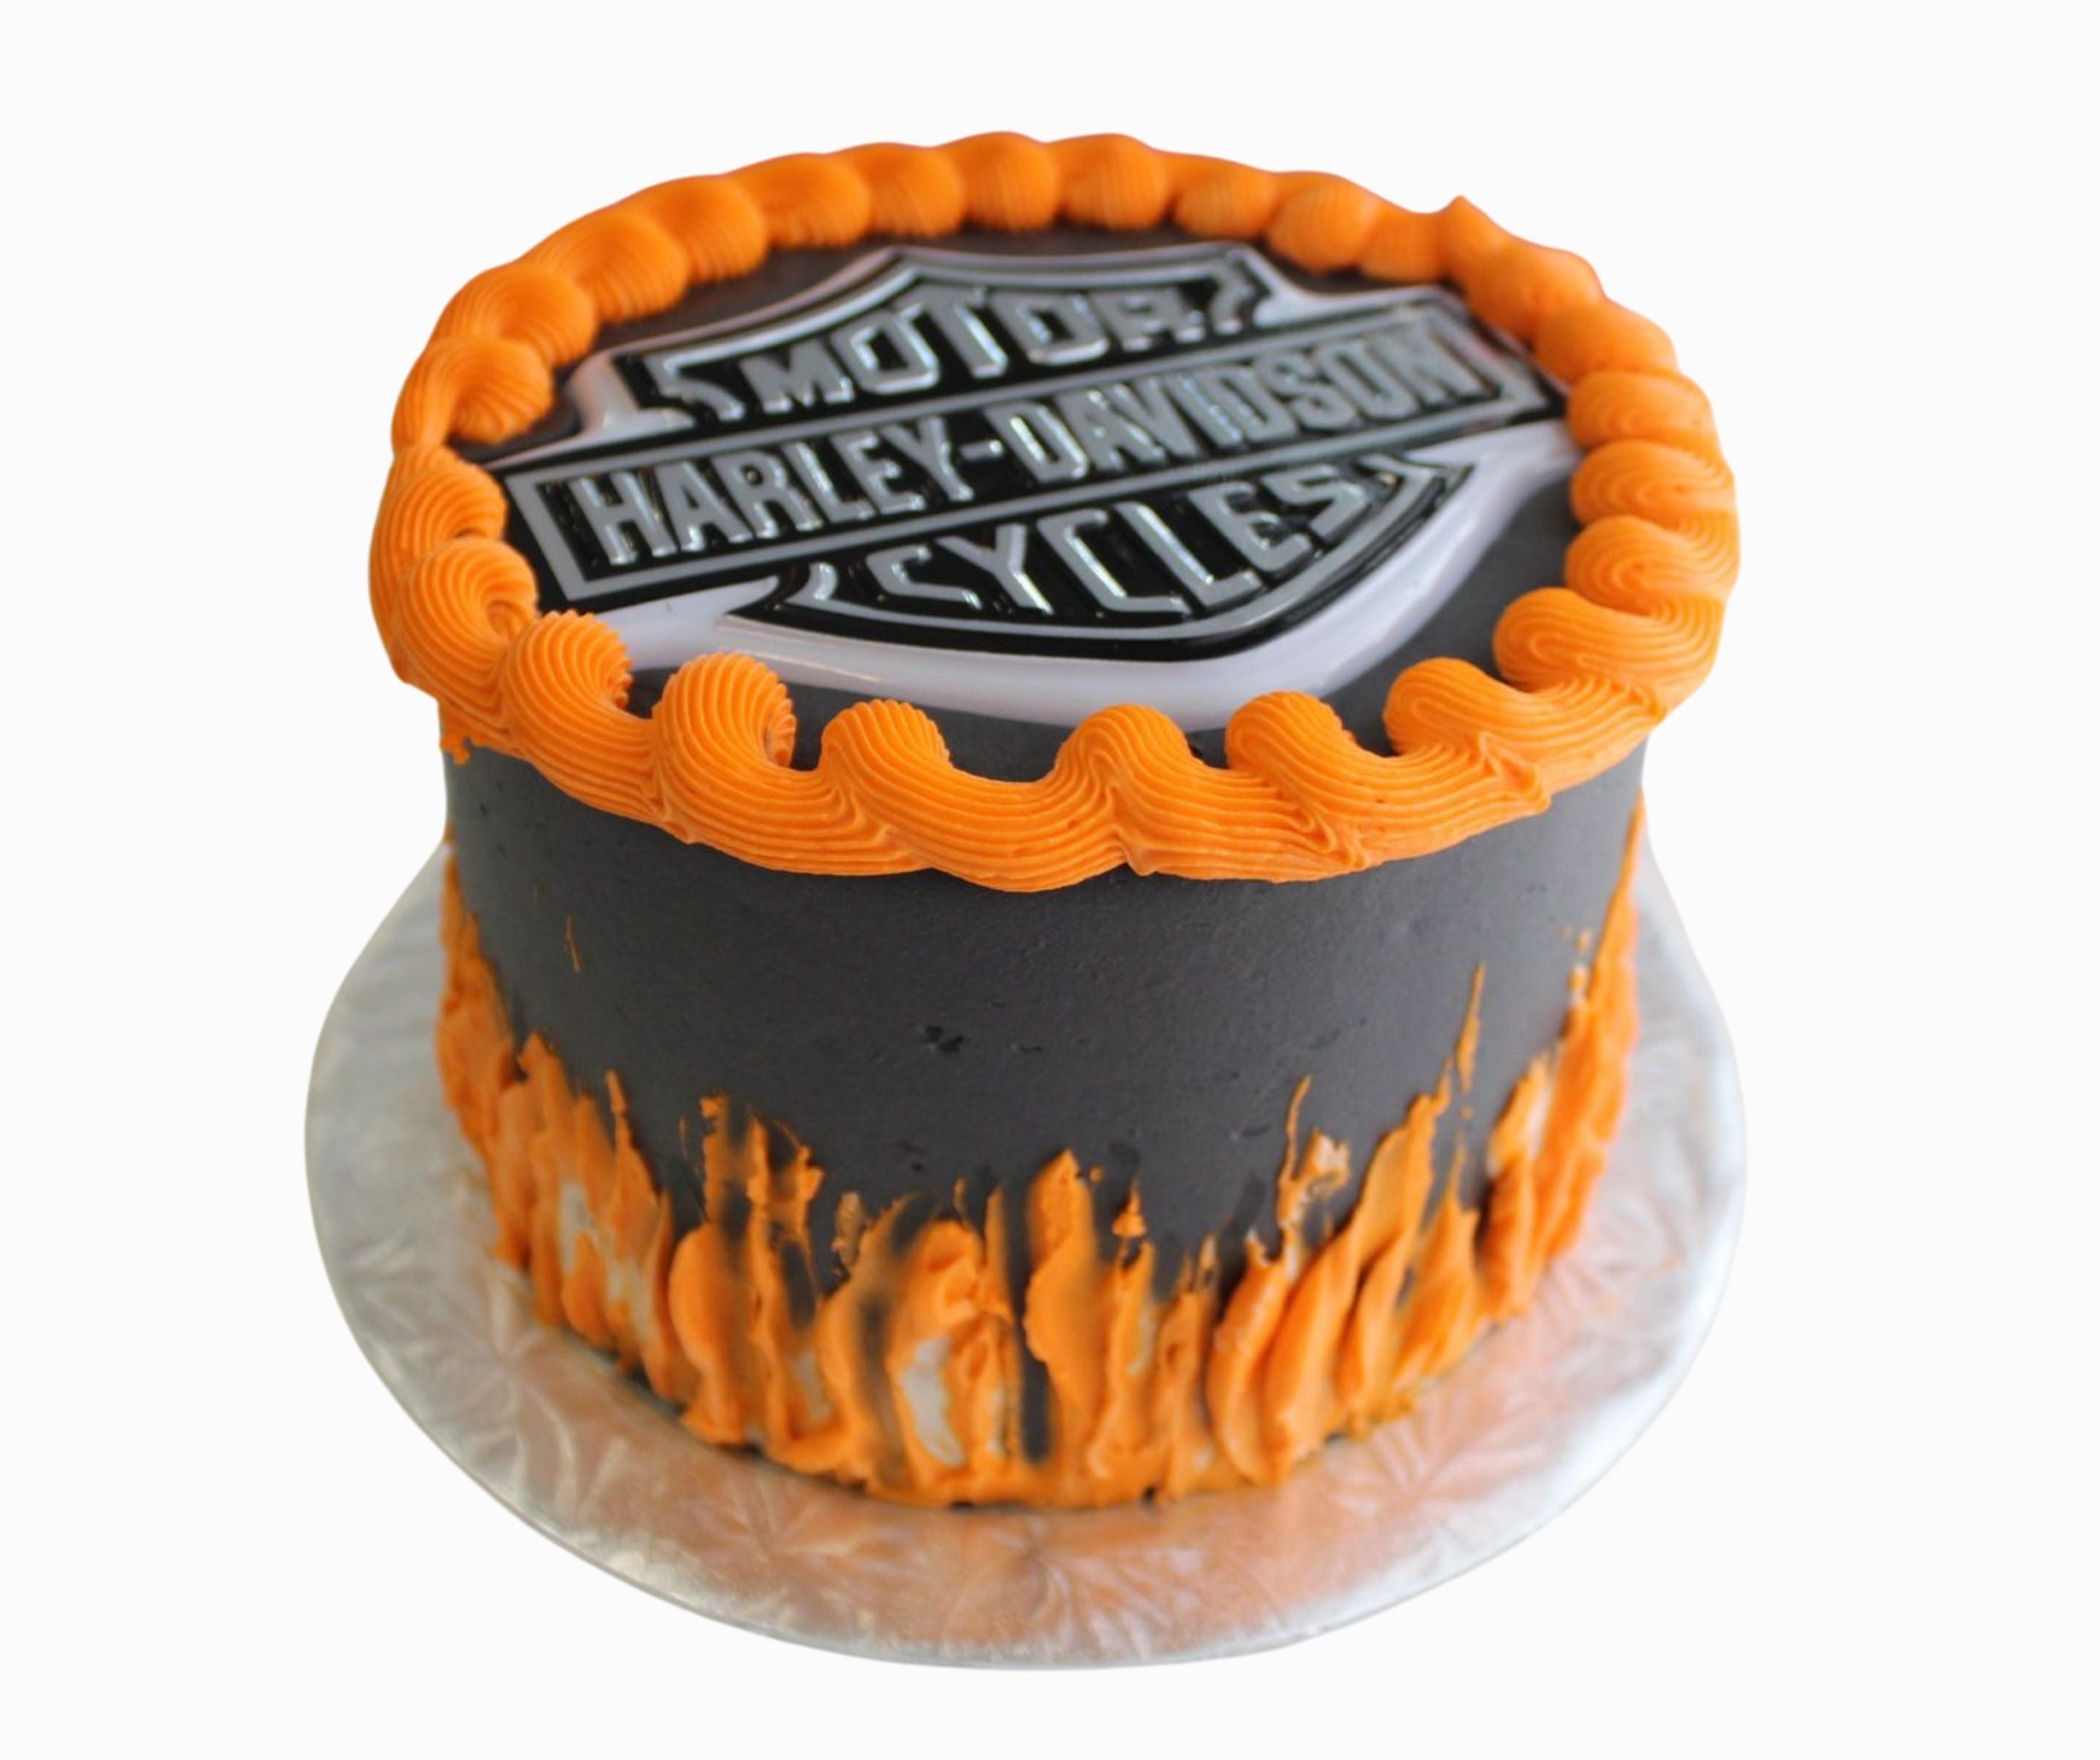 CakeSophia: Harley Davidson cake